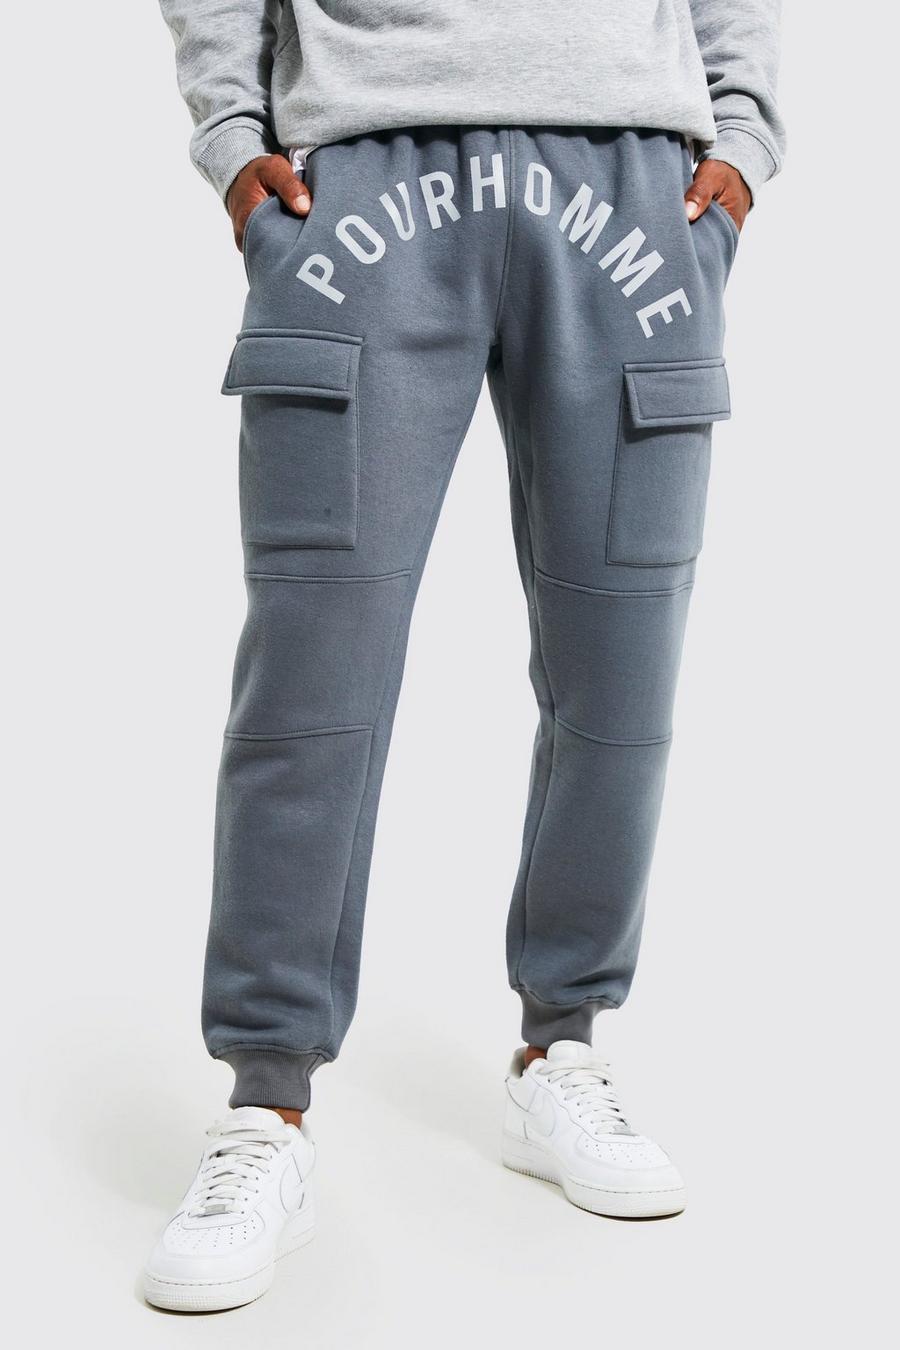 Pantalón deportivo cargo ajustado con estampado Pour Homme, Charcoal grigio image number 1